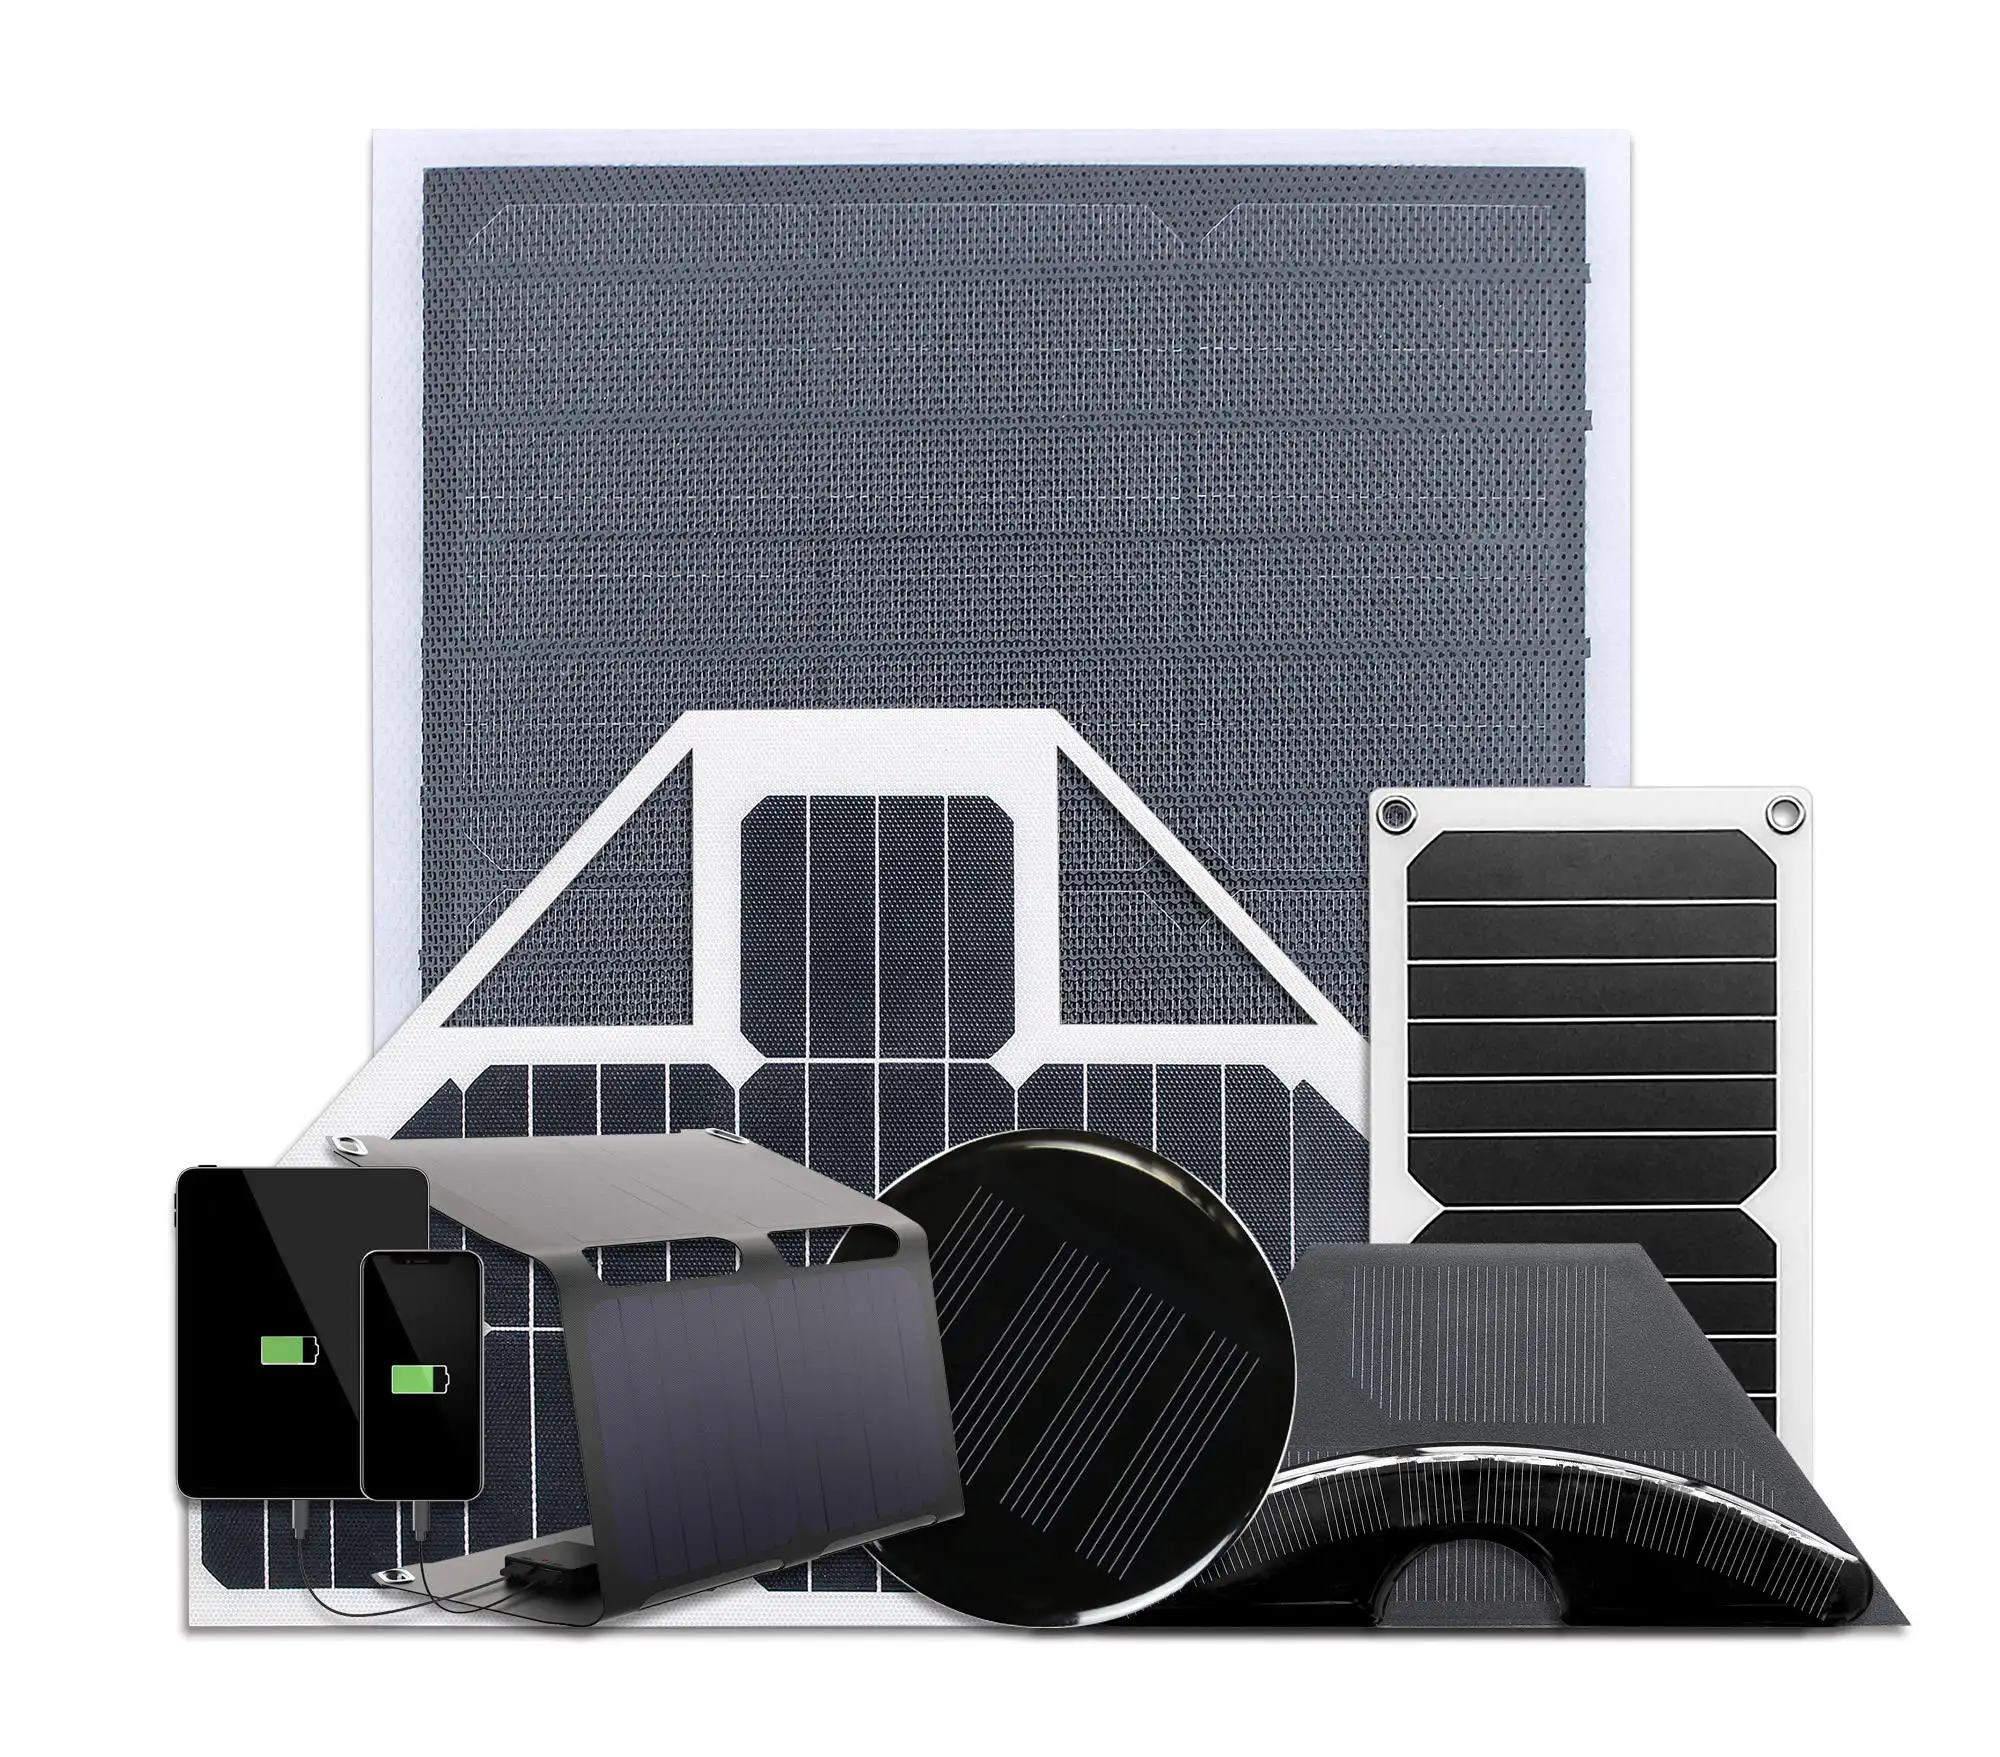 6W 5V 1A panneau solaire IP67 étanche Mono Module bricolage avec matériau PET pour téléphone intelligent petits ventilateurs moniteur mini panneau solaire